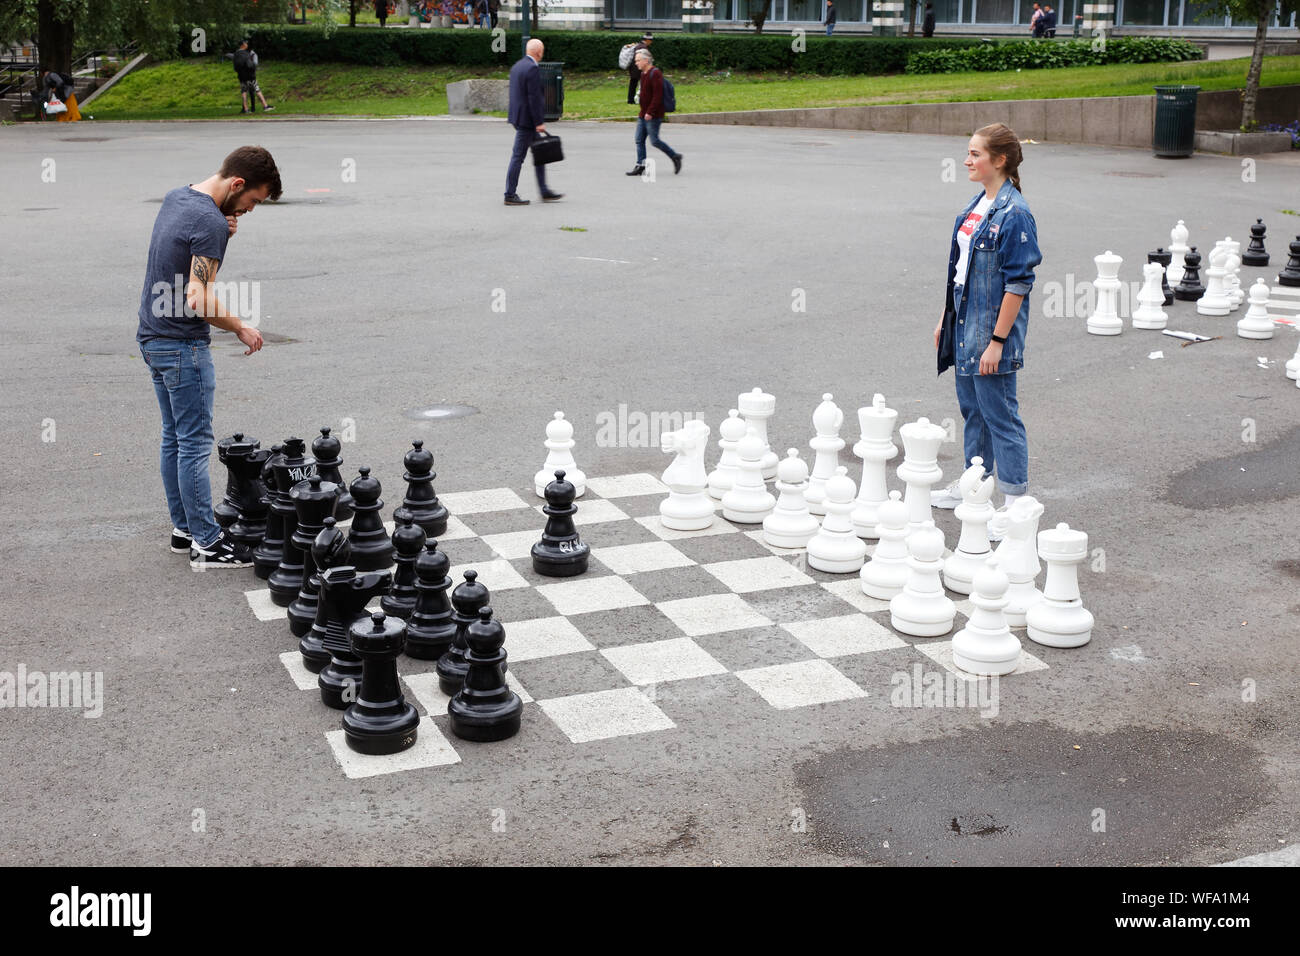 Oslo, Norvège - 20 juin 2019 : Un homme et une femme jouant aux échecs dans le Vaterlandsparken park. Banque D'Images